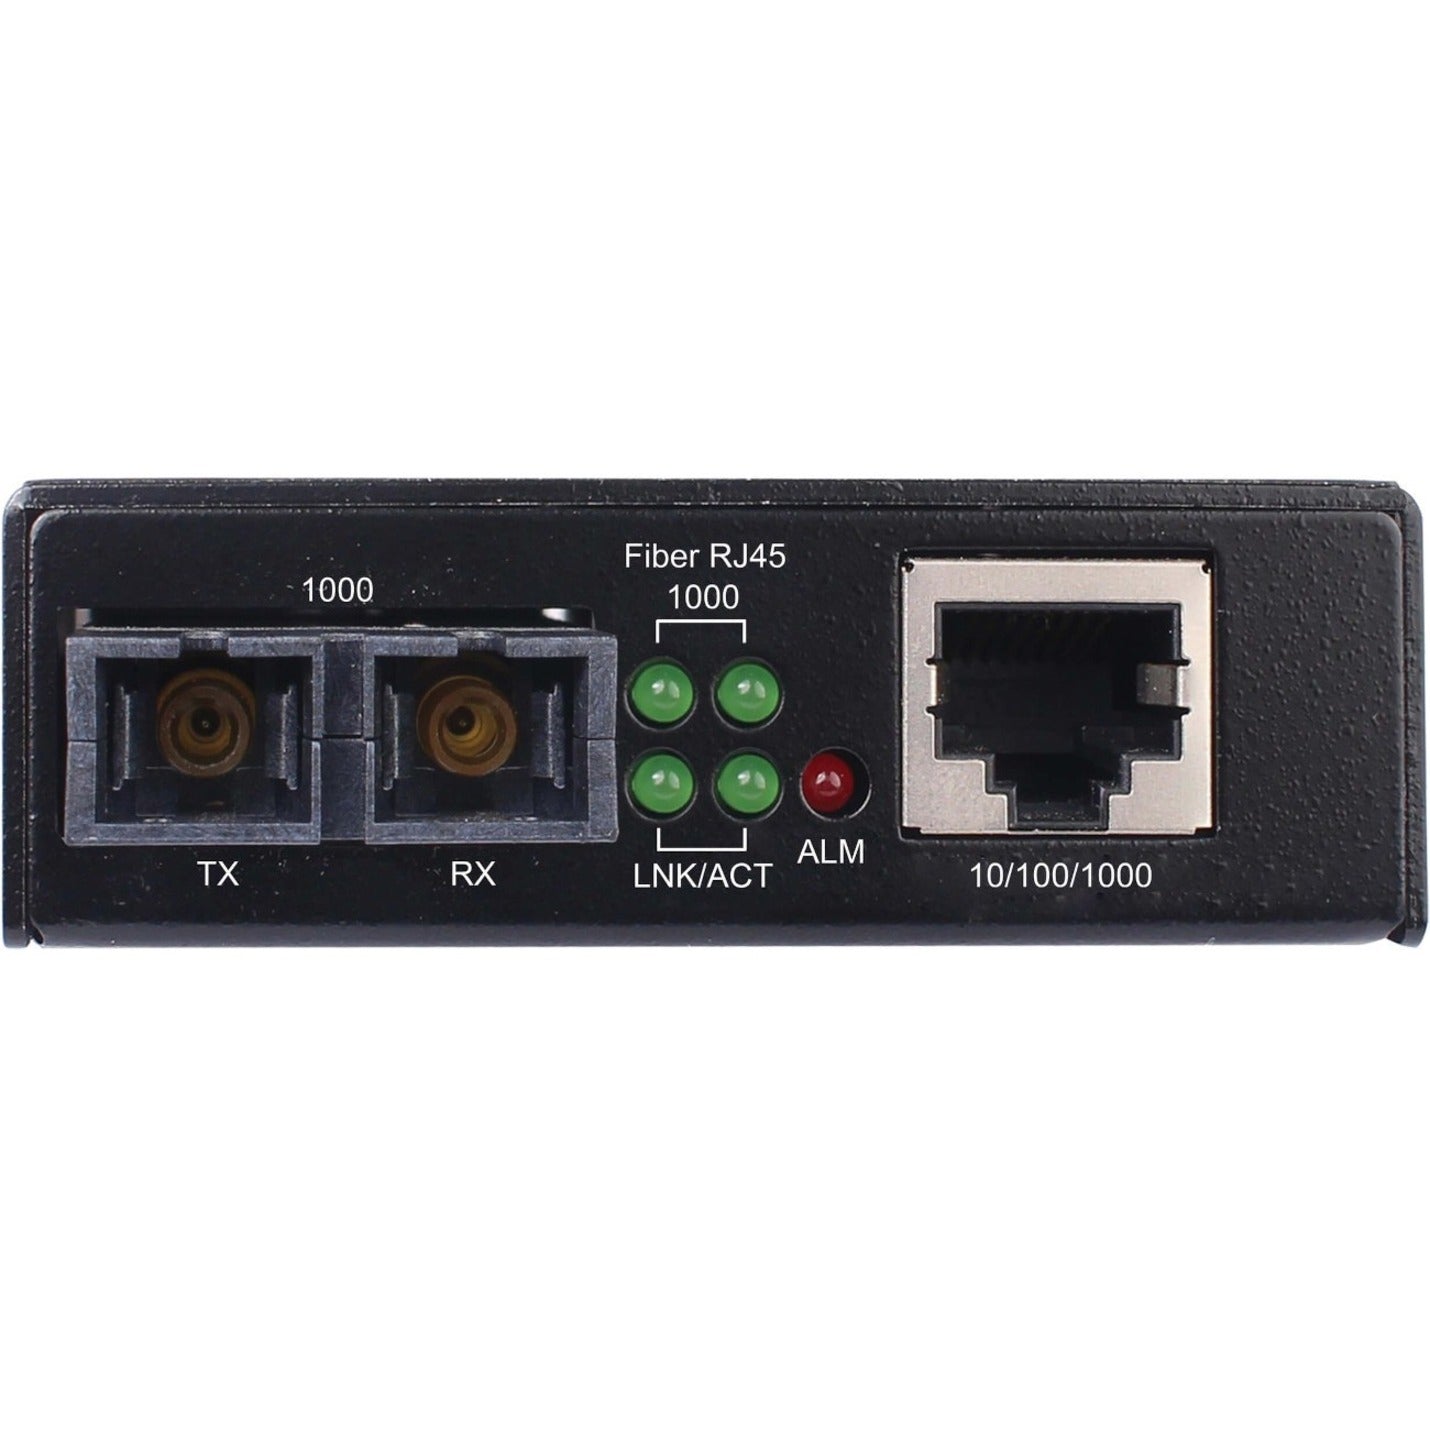 Tripp Lite N785-H01-SCMM Transceiver/Media Converter, Gigabit Copper to Fiber, Multi-mode, 1640.42 ft Distance Supported